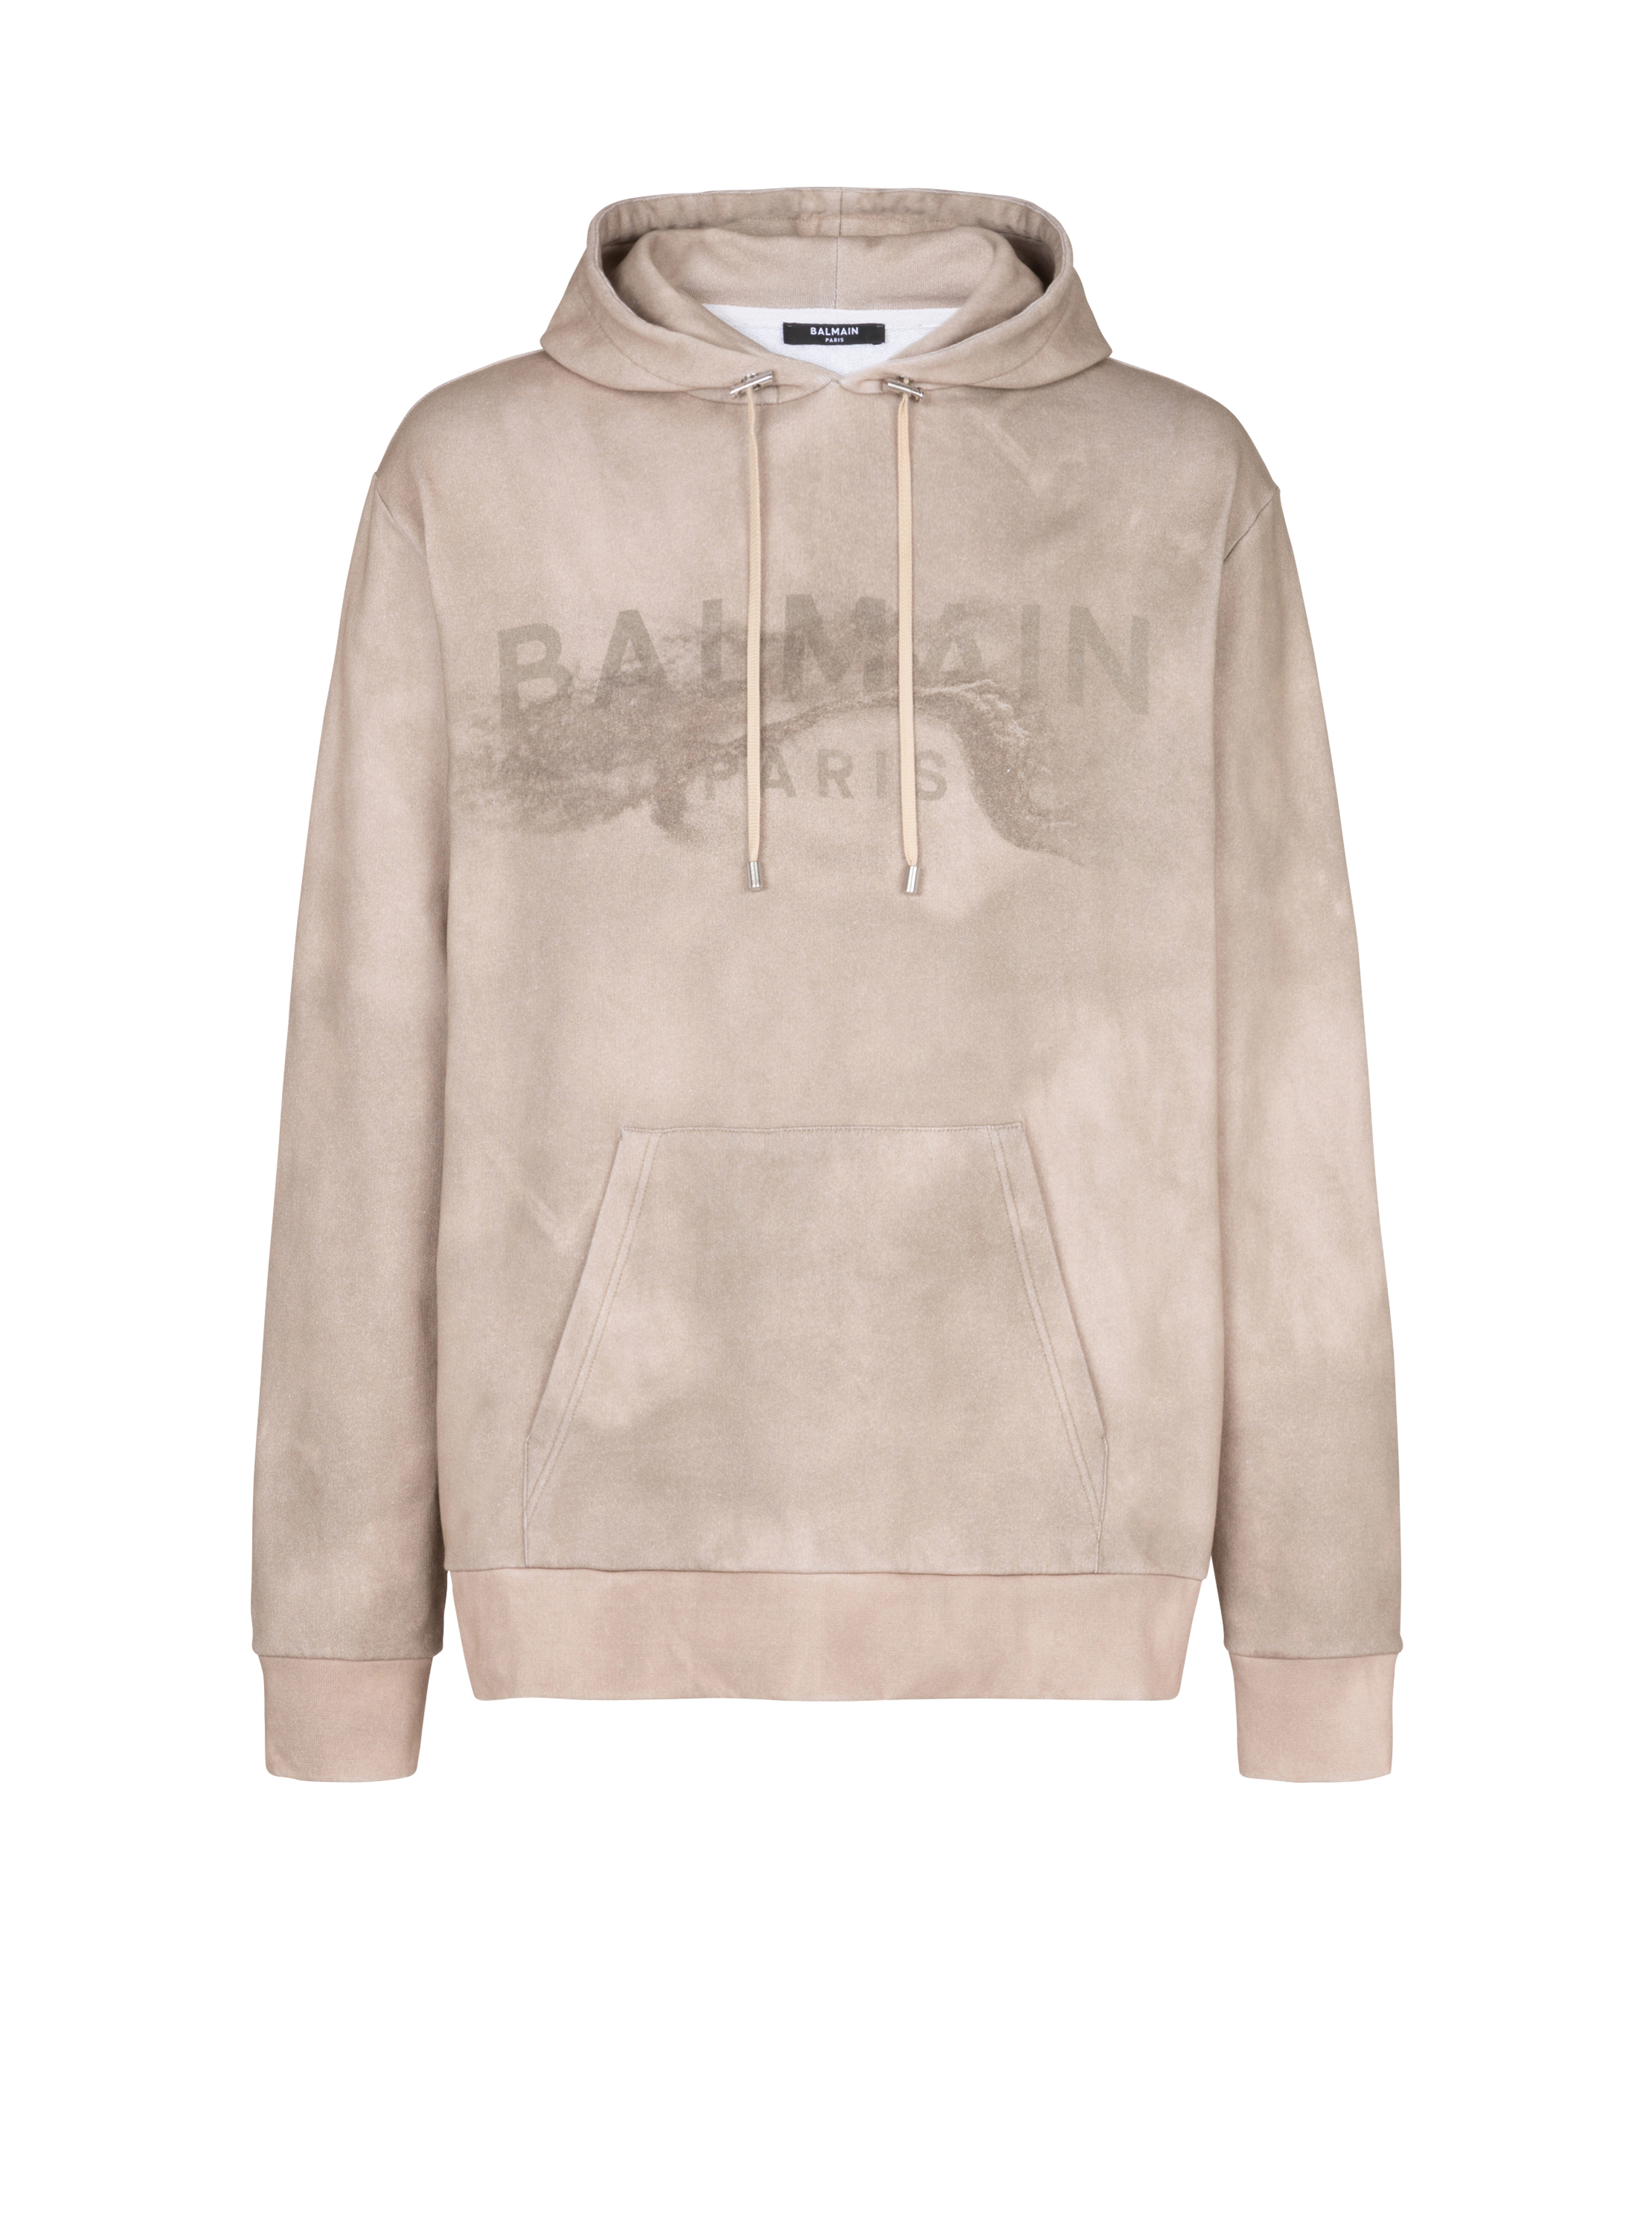 Balmain Paris沙漠标志印花环保设计棉质连帽运动衫, beige